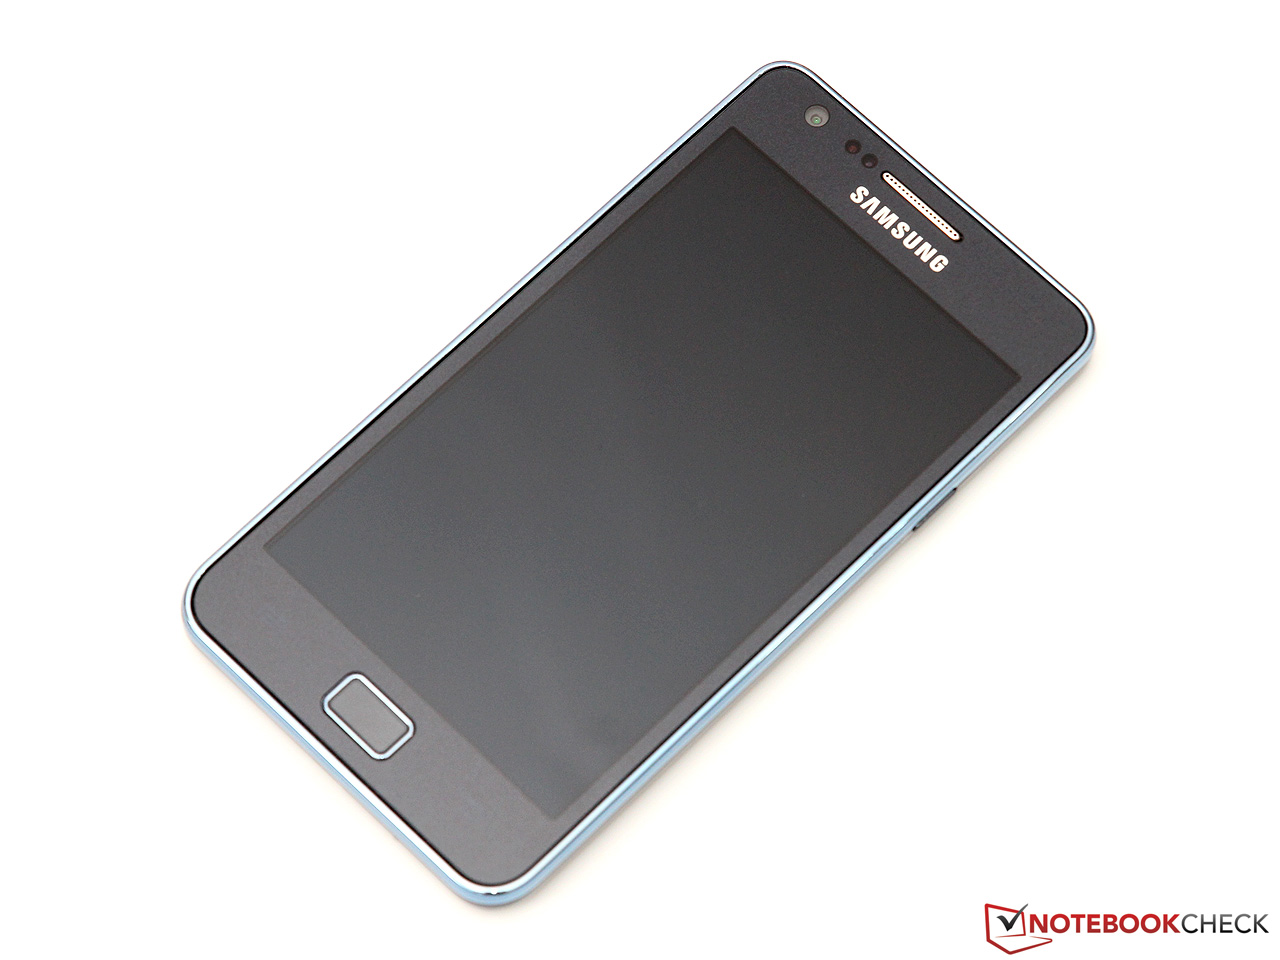 Verkleuren Vervelen samenzwering Review Samsung Galaxy S2 Plus (i9105P) Smartphone - NotebookCheck.net  Reviews